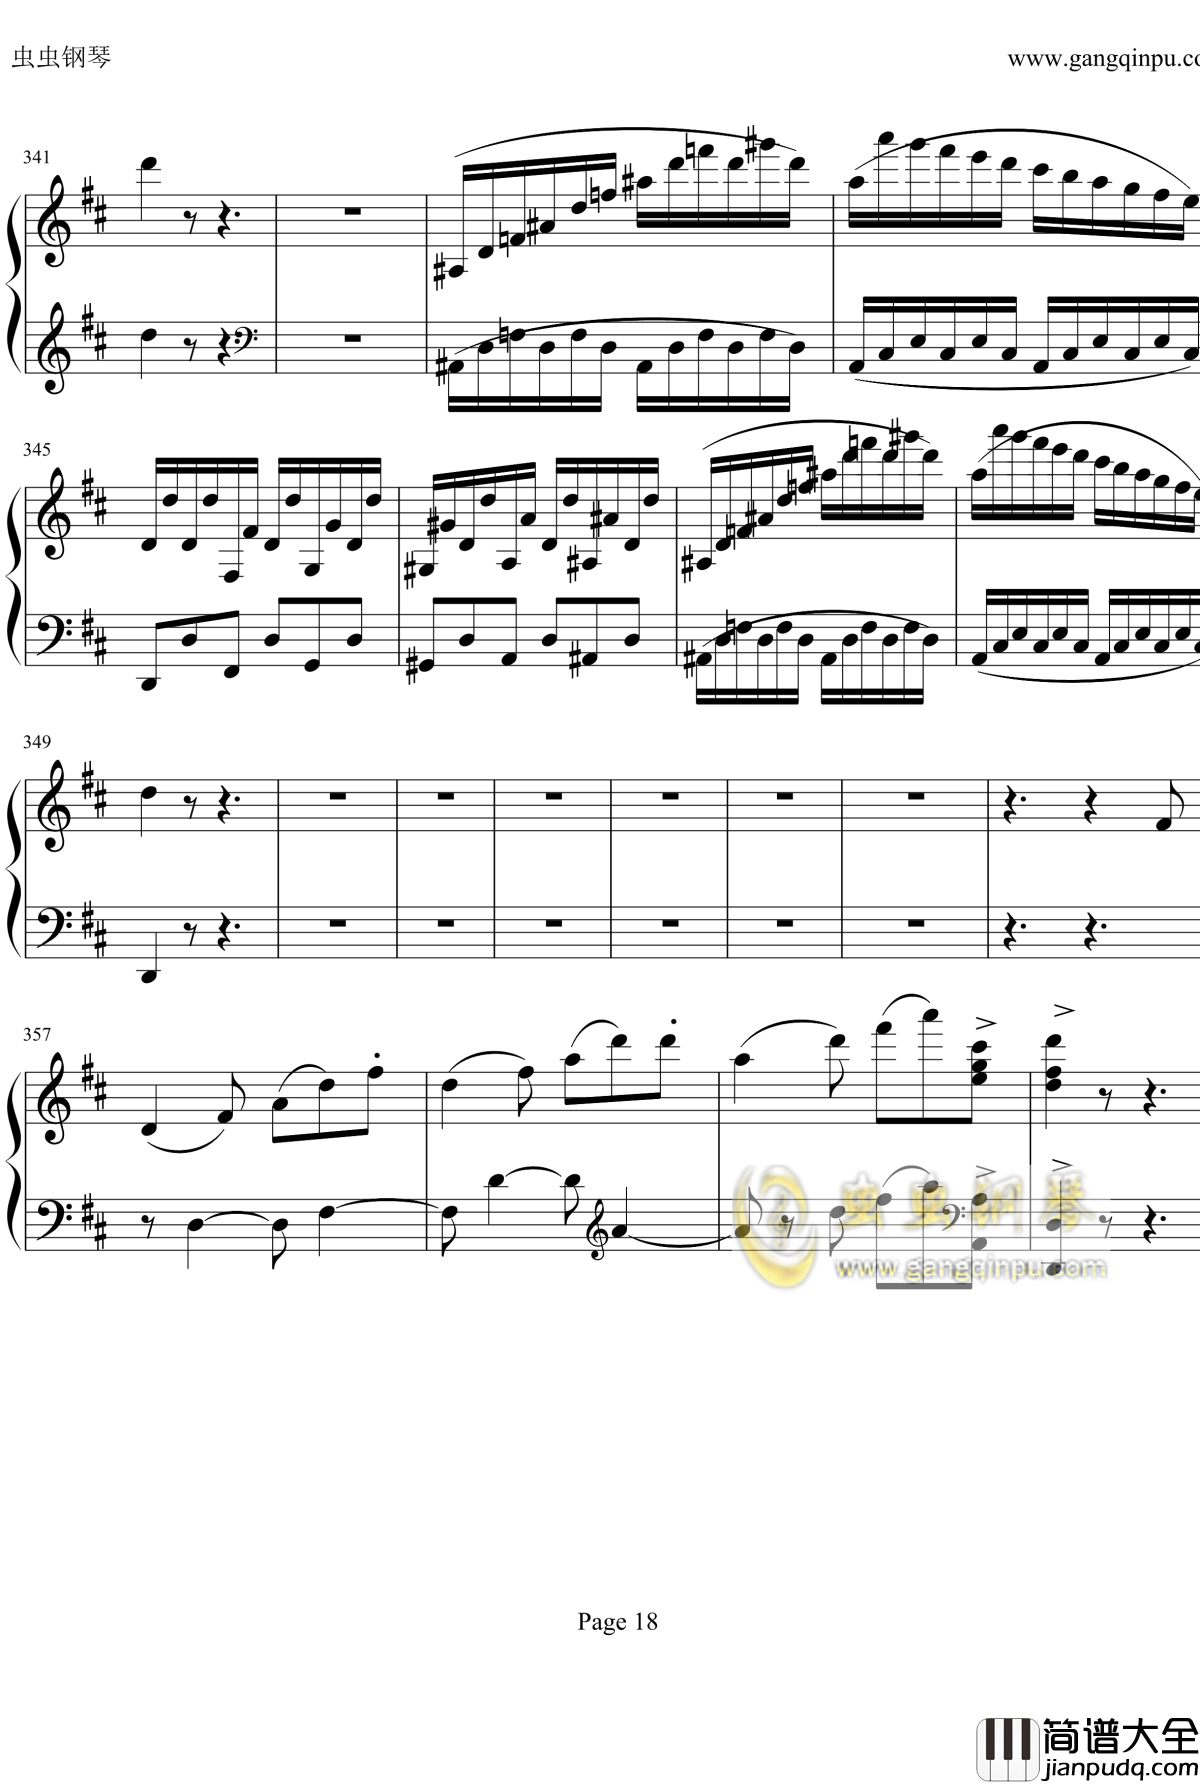 贝多芬钢琴协奏曲Op61第三乐章钢琴谱_贝多芬